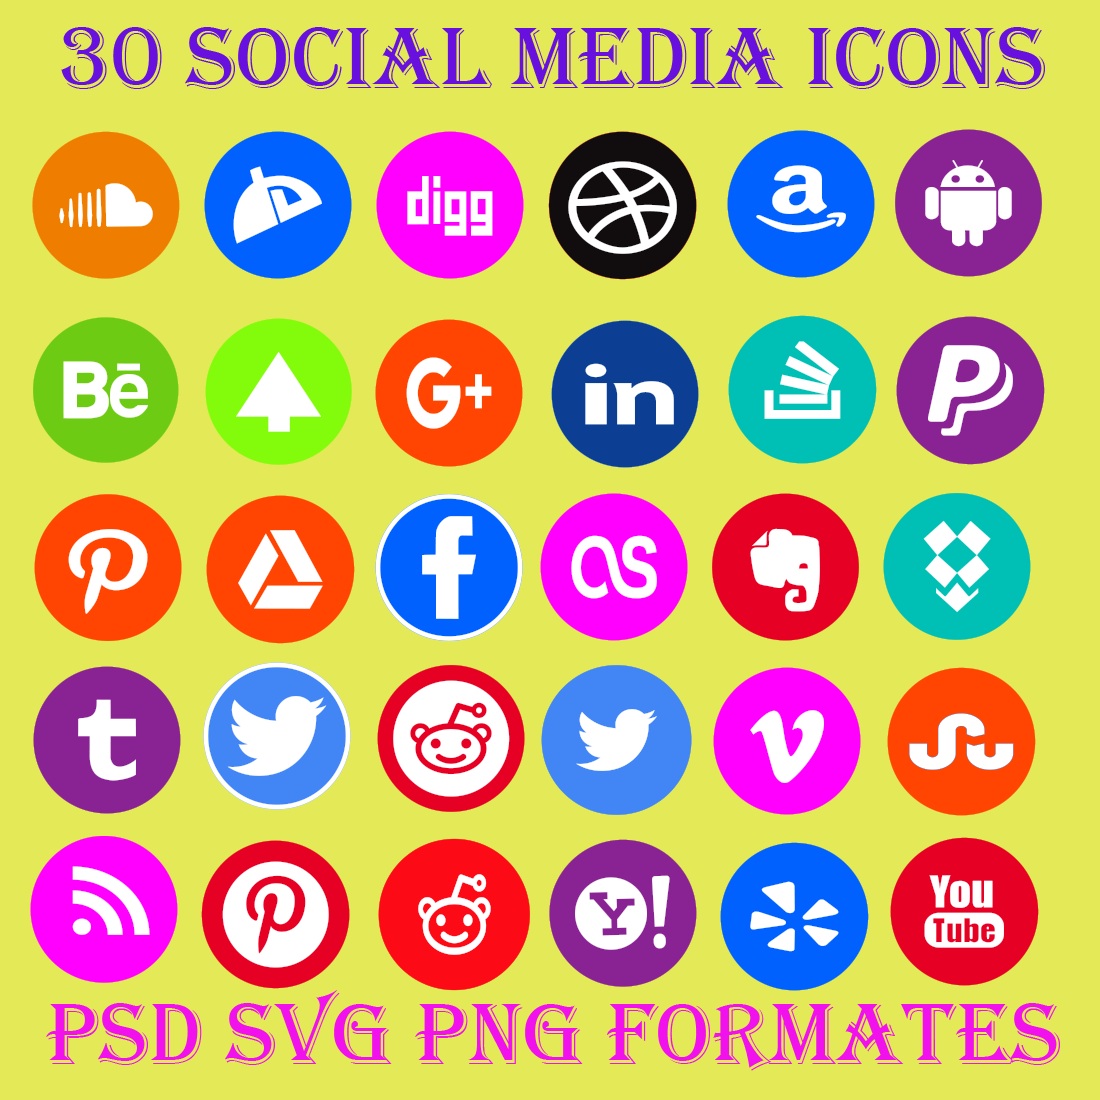 social media logos vector 2022